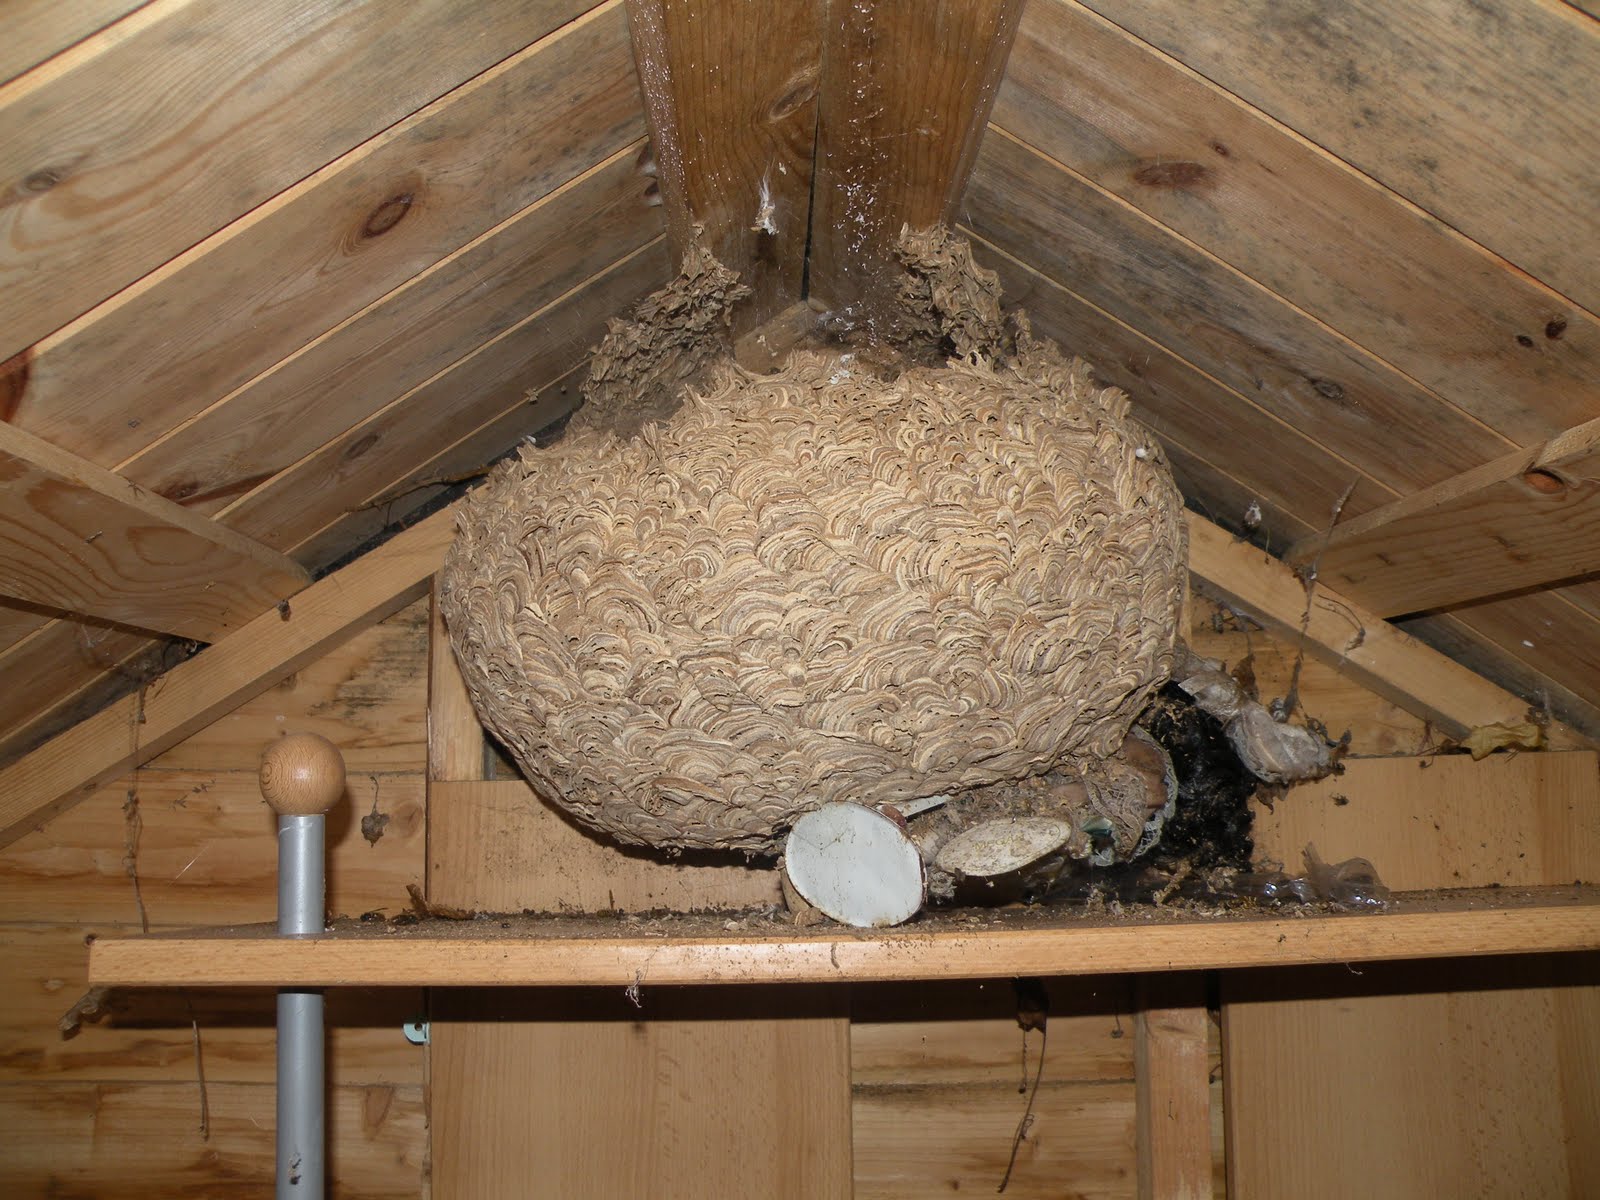 The Garden Blog: Wasps nest